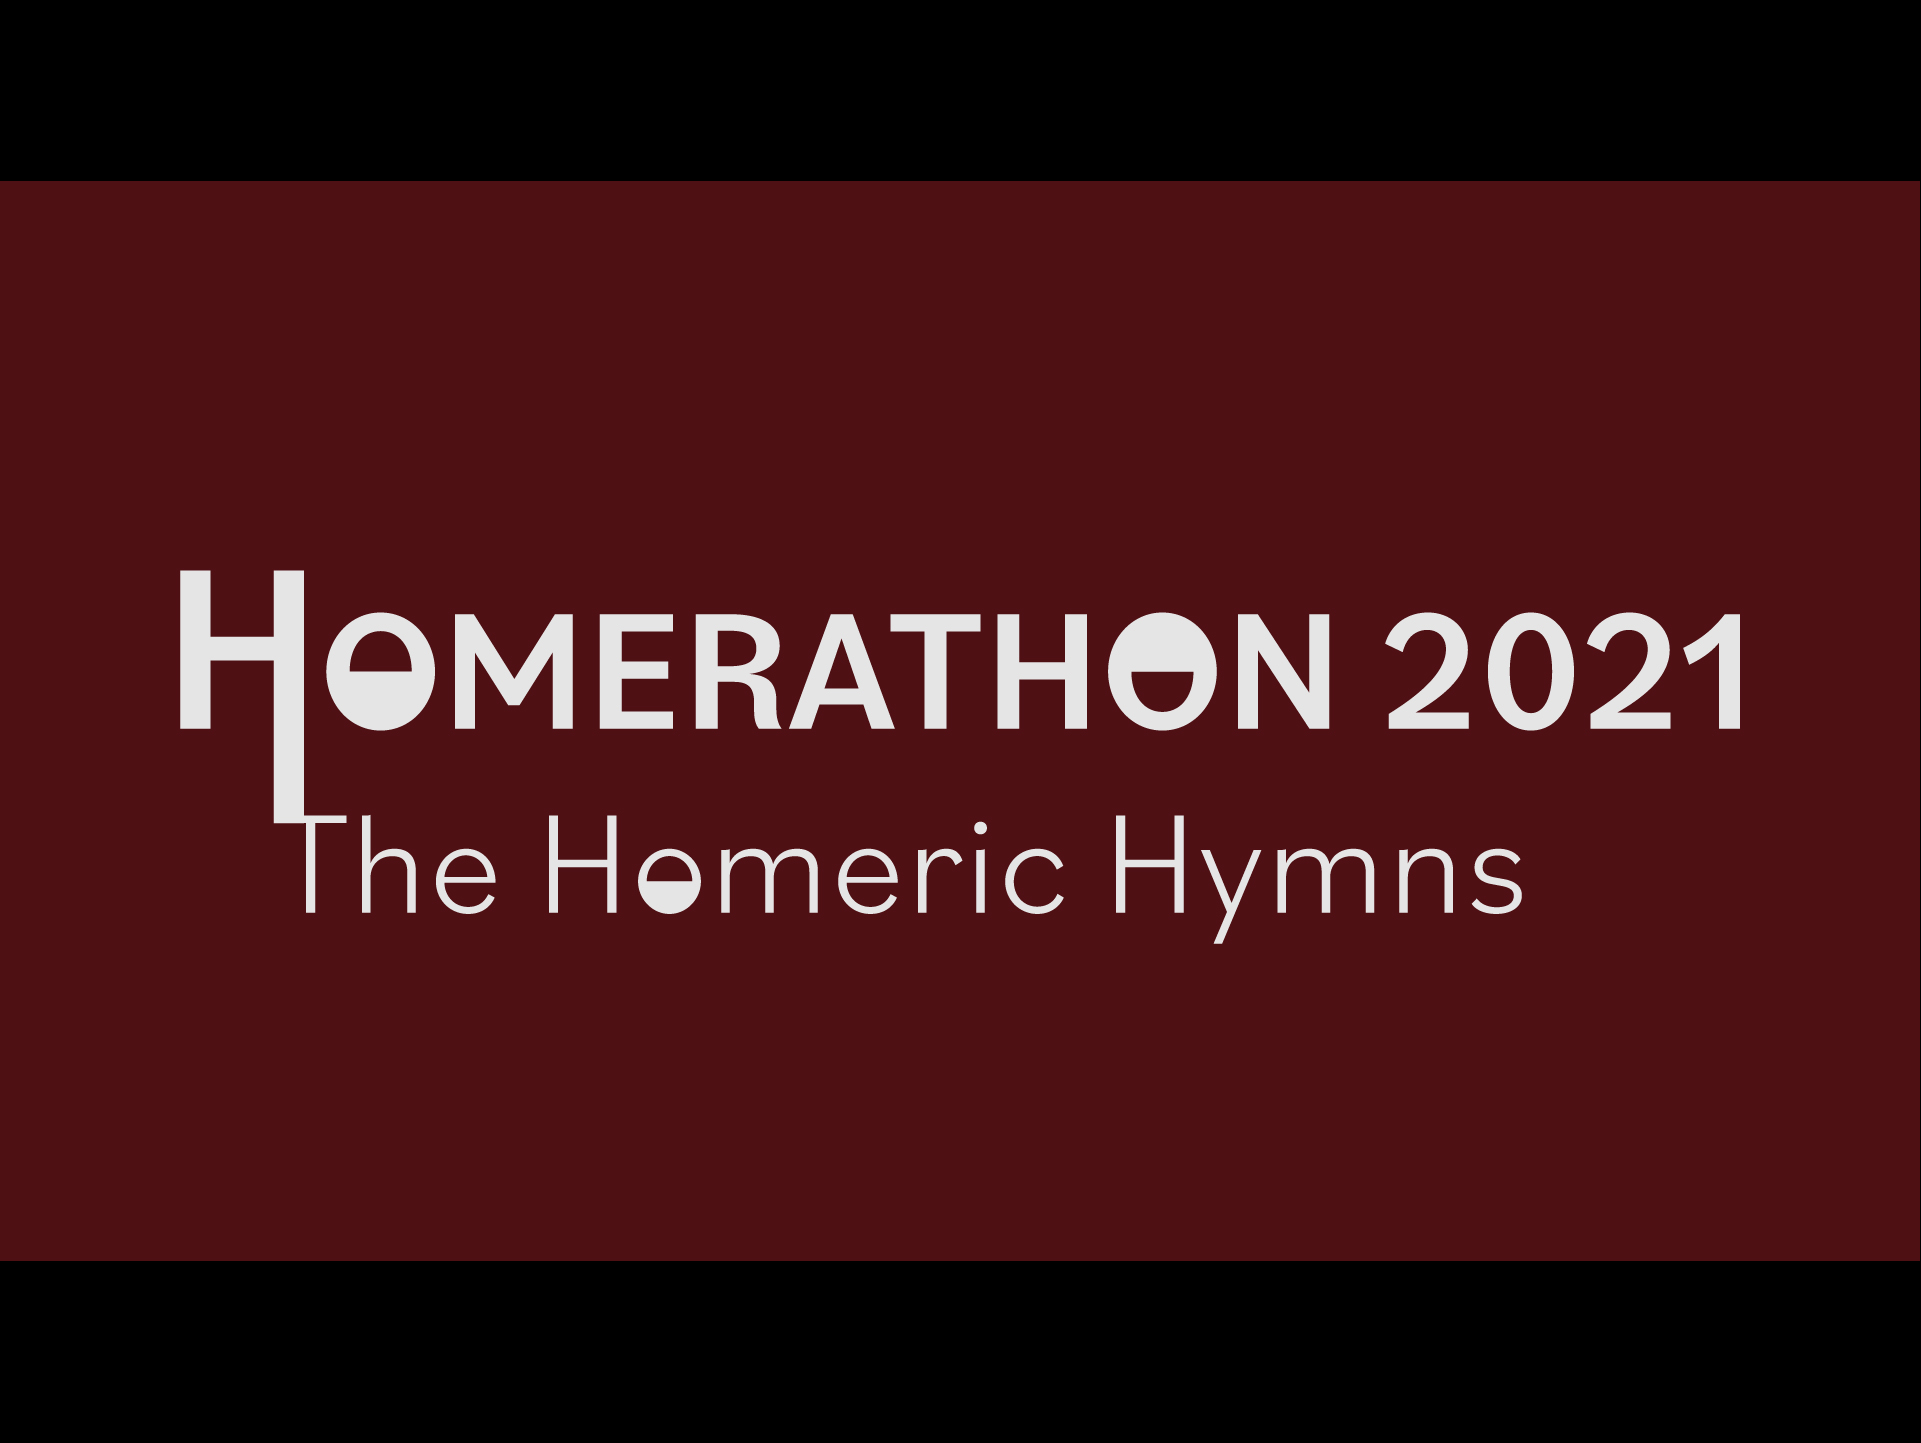 Homerathon 2021